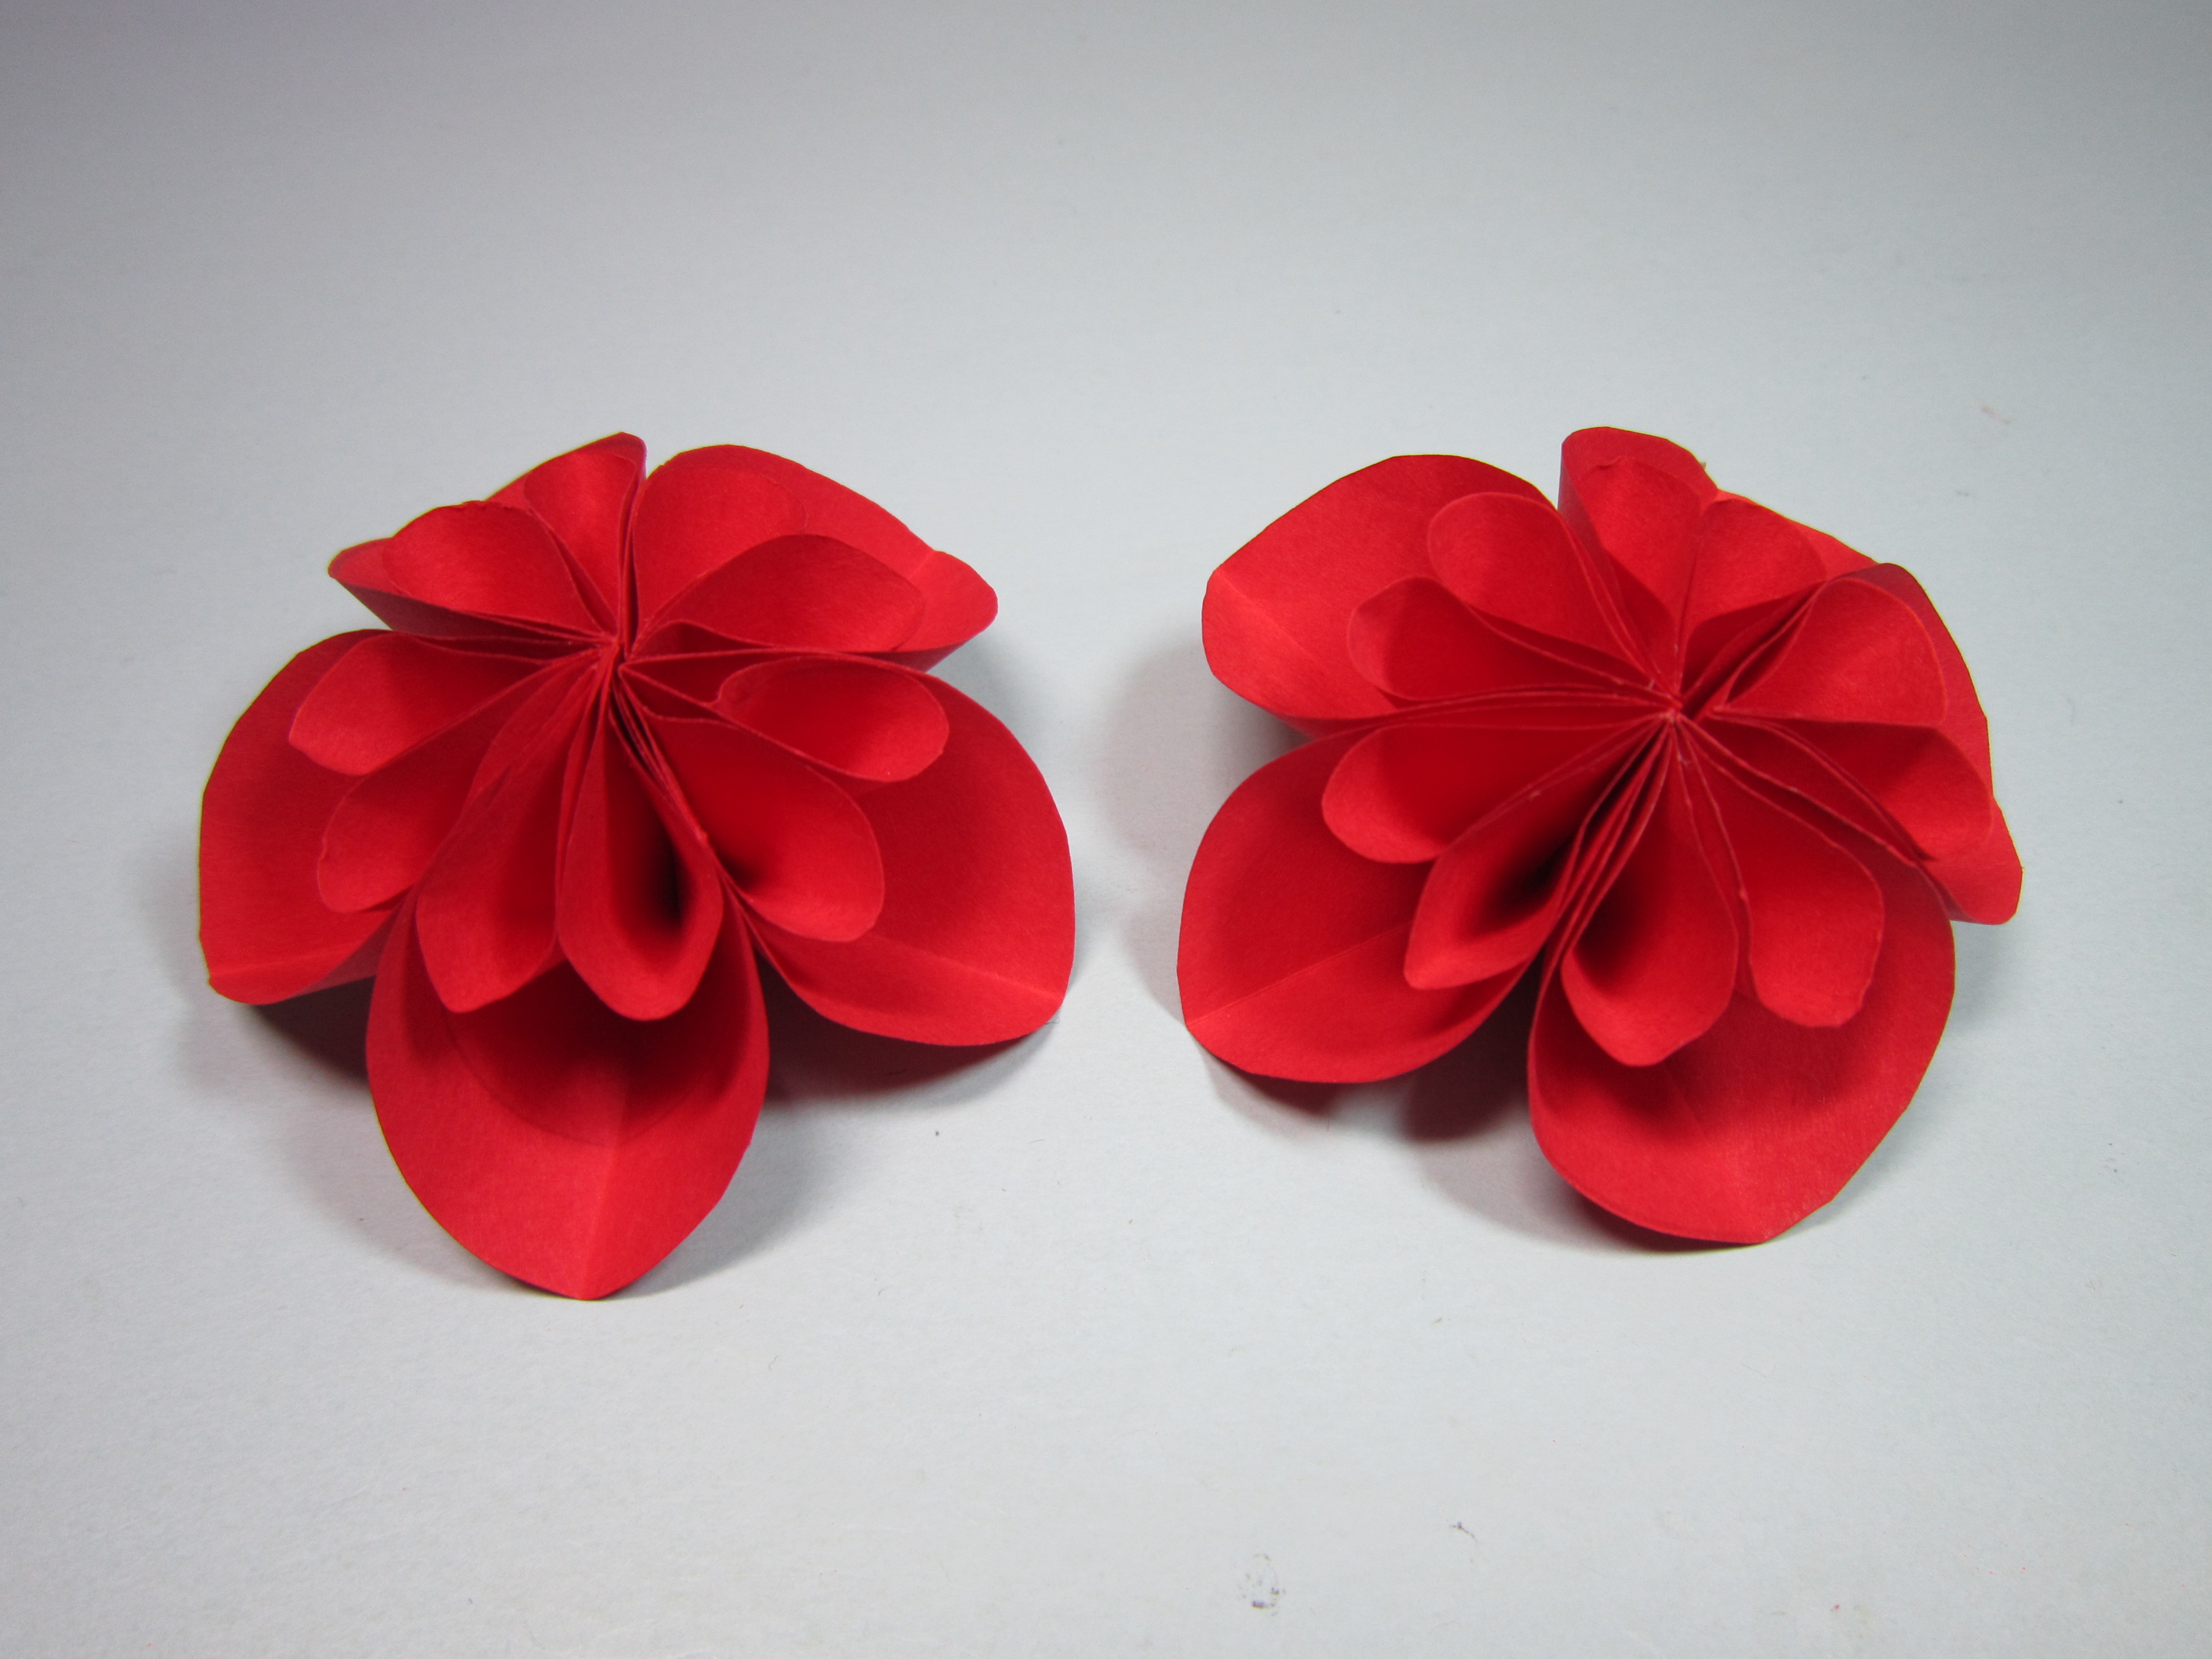 3分钟学会简单又美丽的花朵折纸,纸花的折法,diy手工制作